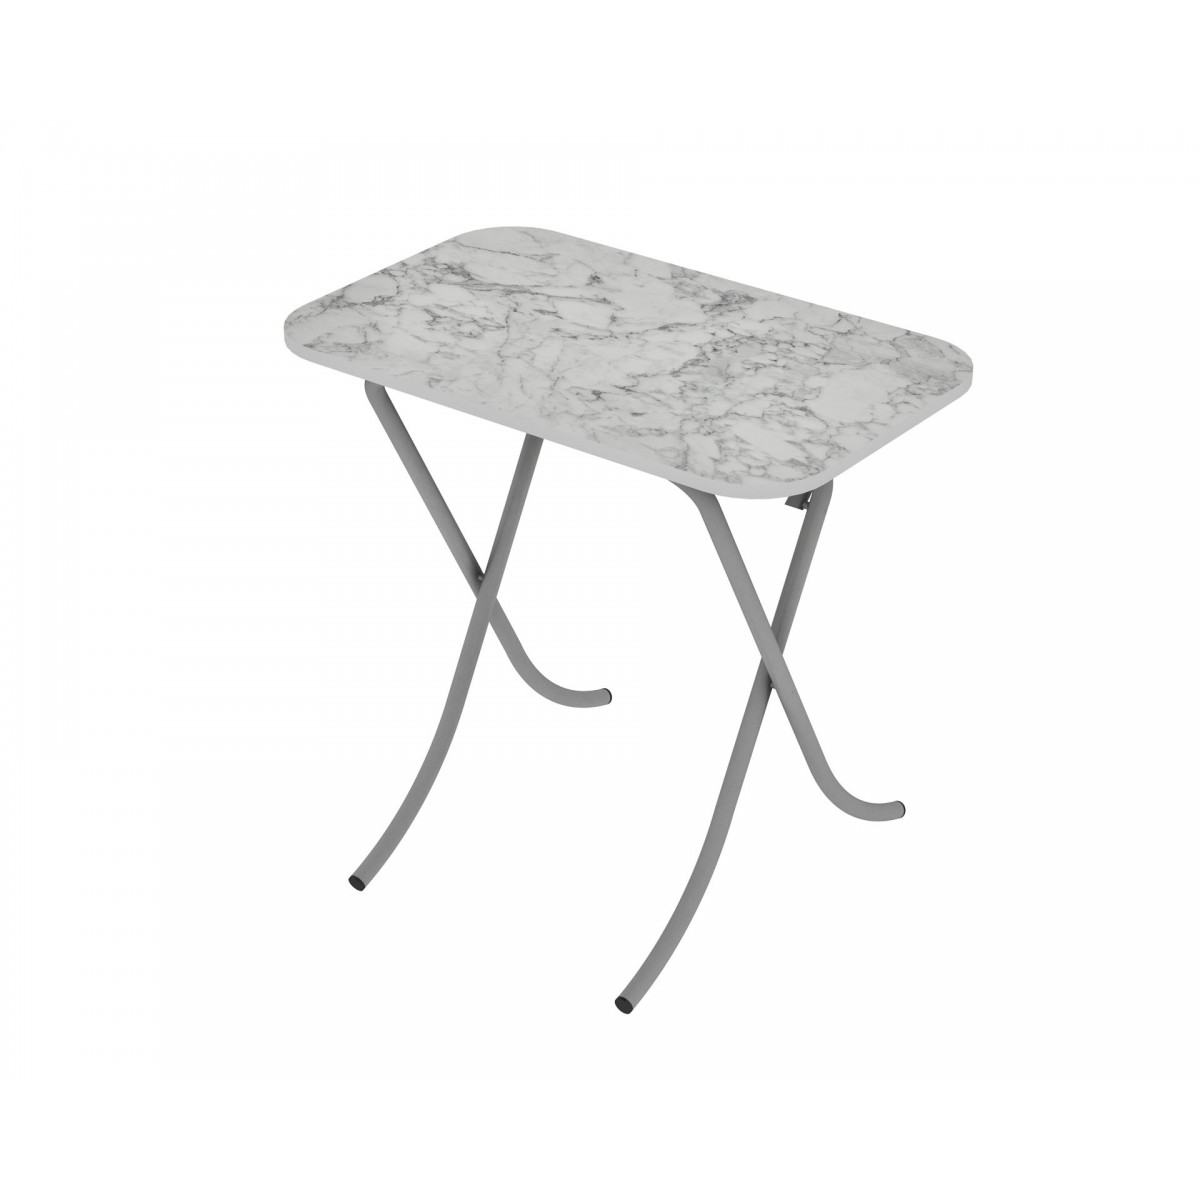 Tραπέζι "MOUNTAIN TOP" ορθογώνιο πτυσσόμενο από mdf/μέταλλο σε χρώμα λευκό μαρμάρου 50x80x75